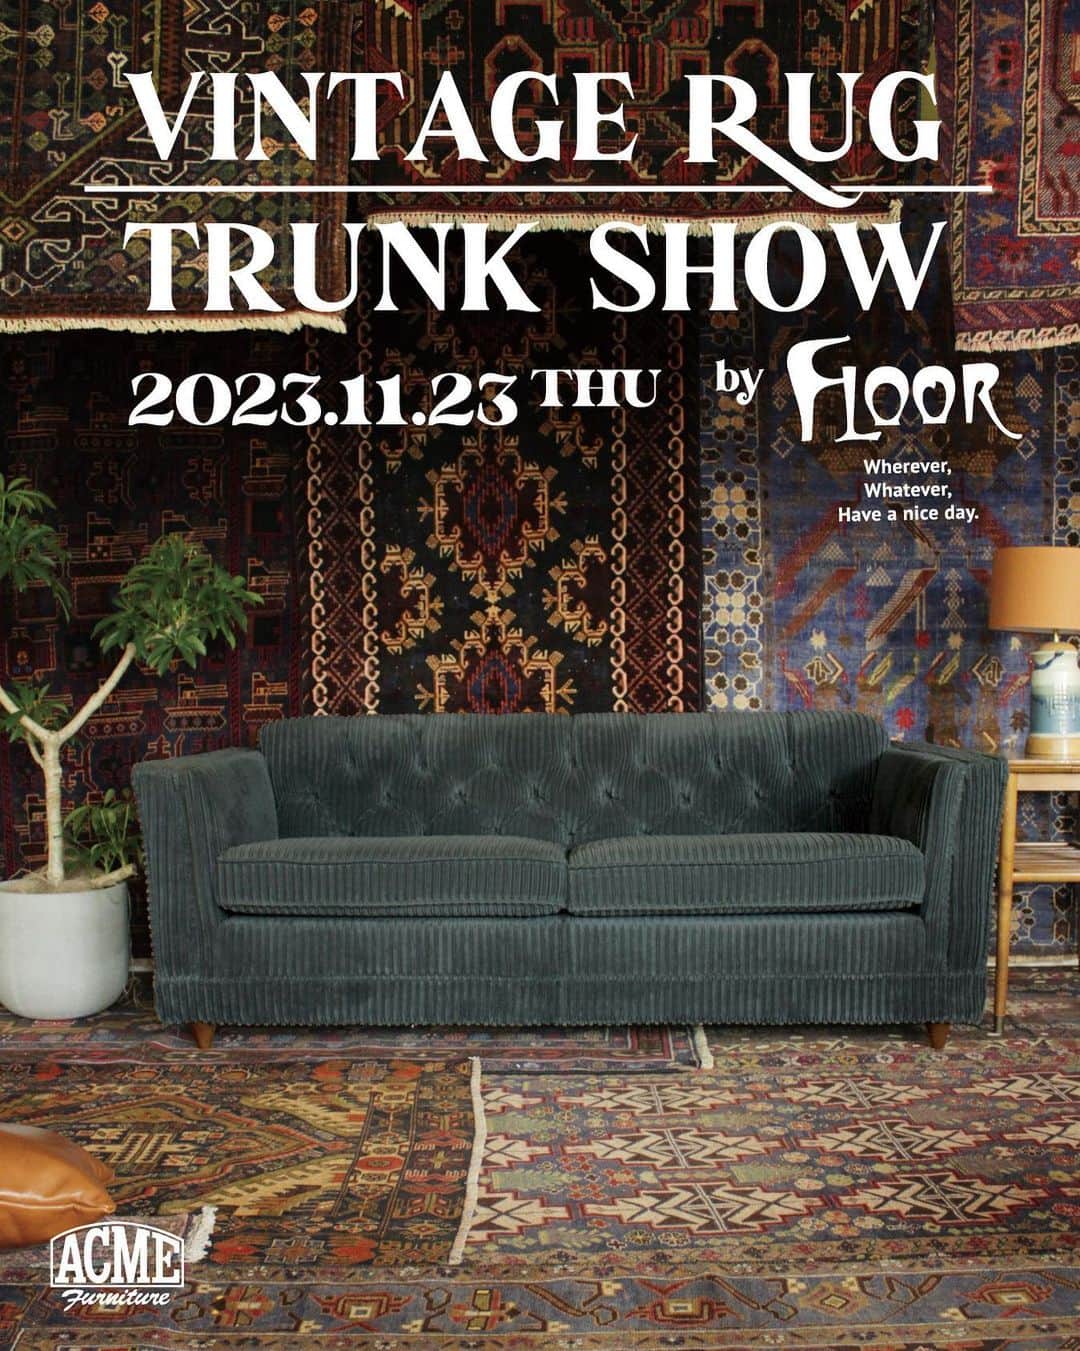 ACME Furnitureのインスタグラム：「“VINTAGE RUG TRUNK SHOW” by Floor.  11.23(thu)−12.17(sun)  ACME Furniture 目黒通り店では、 恒例となってまいりました ヴィンテージラグのトランクショーを開催いたします。  11月25日(土)、26日(日)は“FLOOR “スタッフも在店予定です。 専門家によるご案内と提案をお楽しみいただけます。  寒い季節、足元はもちろん 見ているだけでも心が熱くなる一枚を見つけてみてはいかがでしょう。  @floor.tokyo  @floor_tokyo  @acme_furniture   Contact:ACME Furniture MEGURO St. TEL:03-5720-1071 Email:acme-jsf@baycrews.co.jp   #acmefurniture #vintagefurniture #tribalrug #vintagerug」